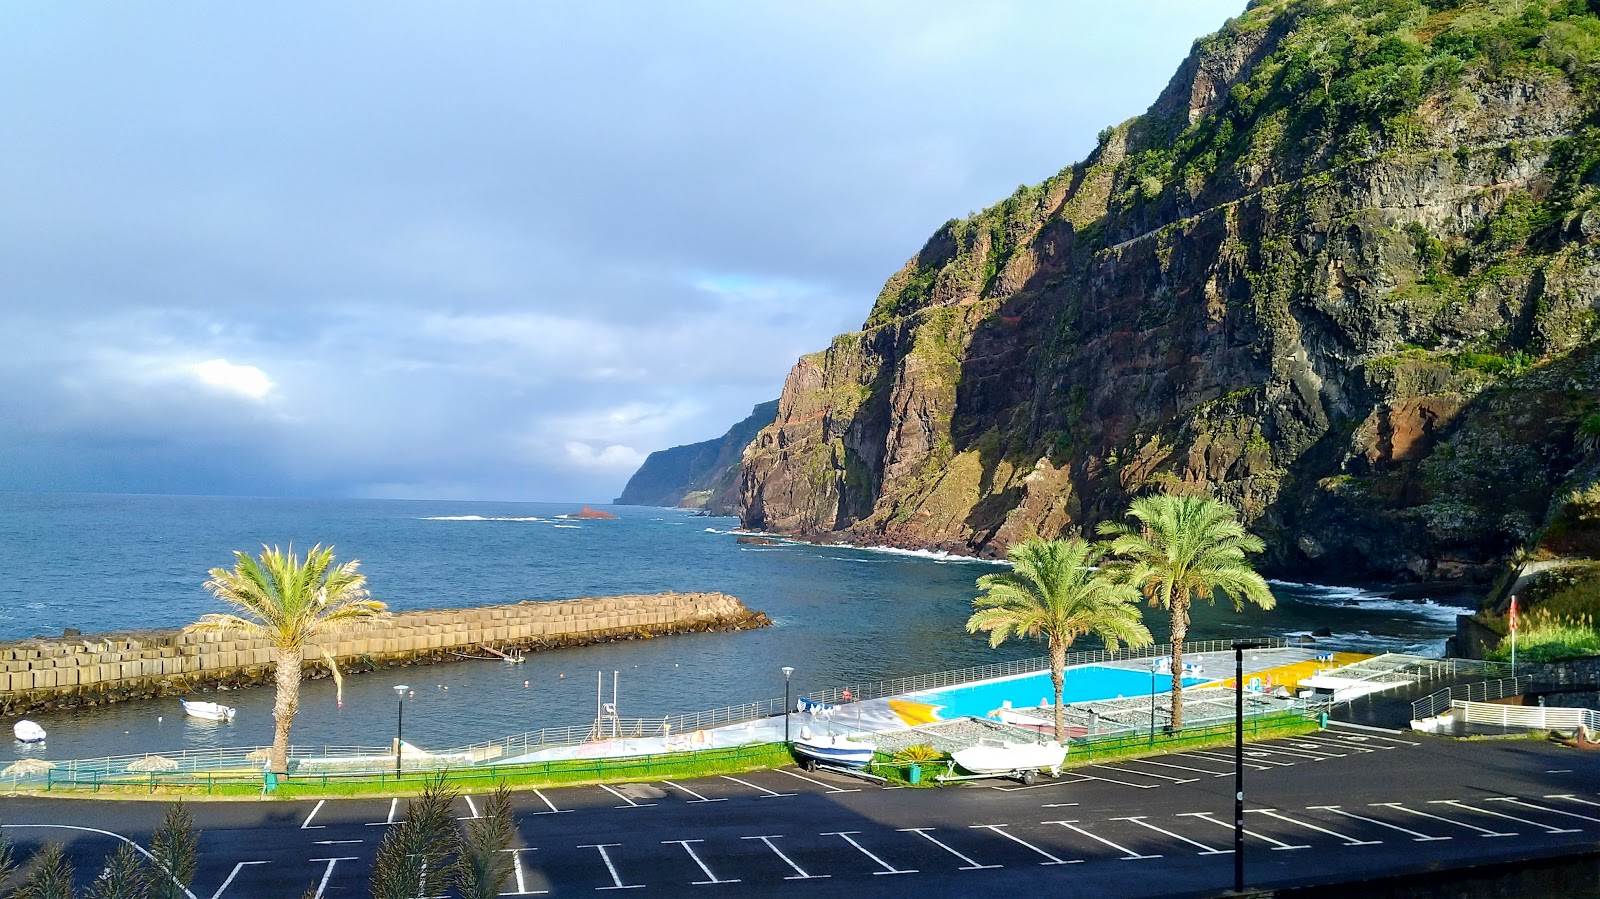 Fotografija Piscinas de Ponta Delgada z turkizna čista voda površino